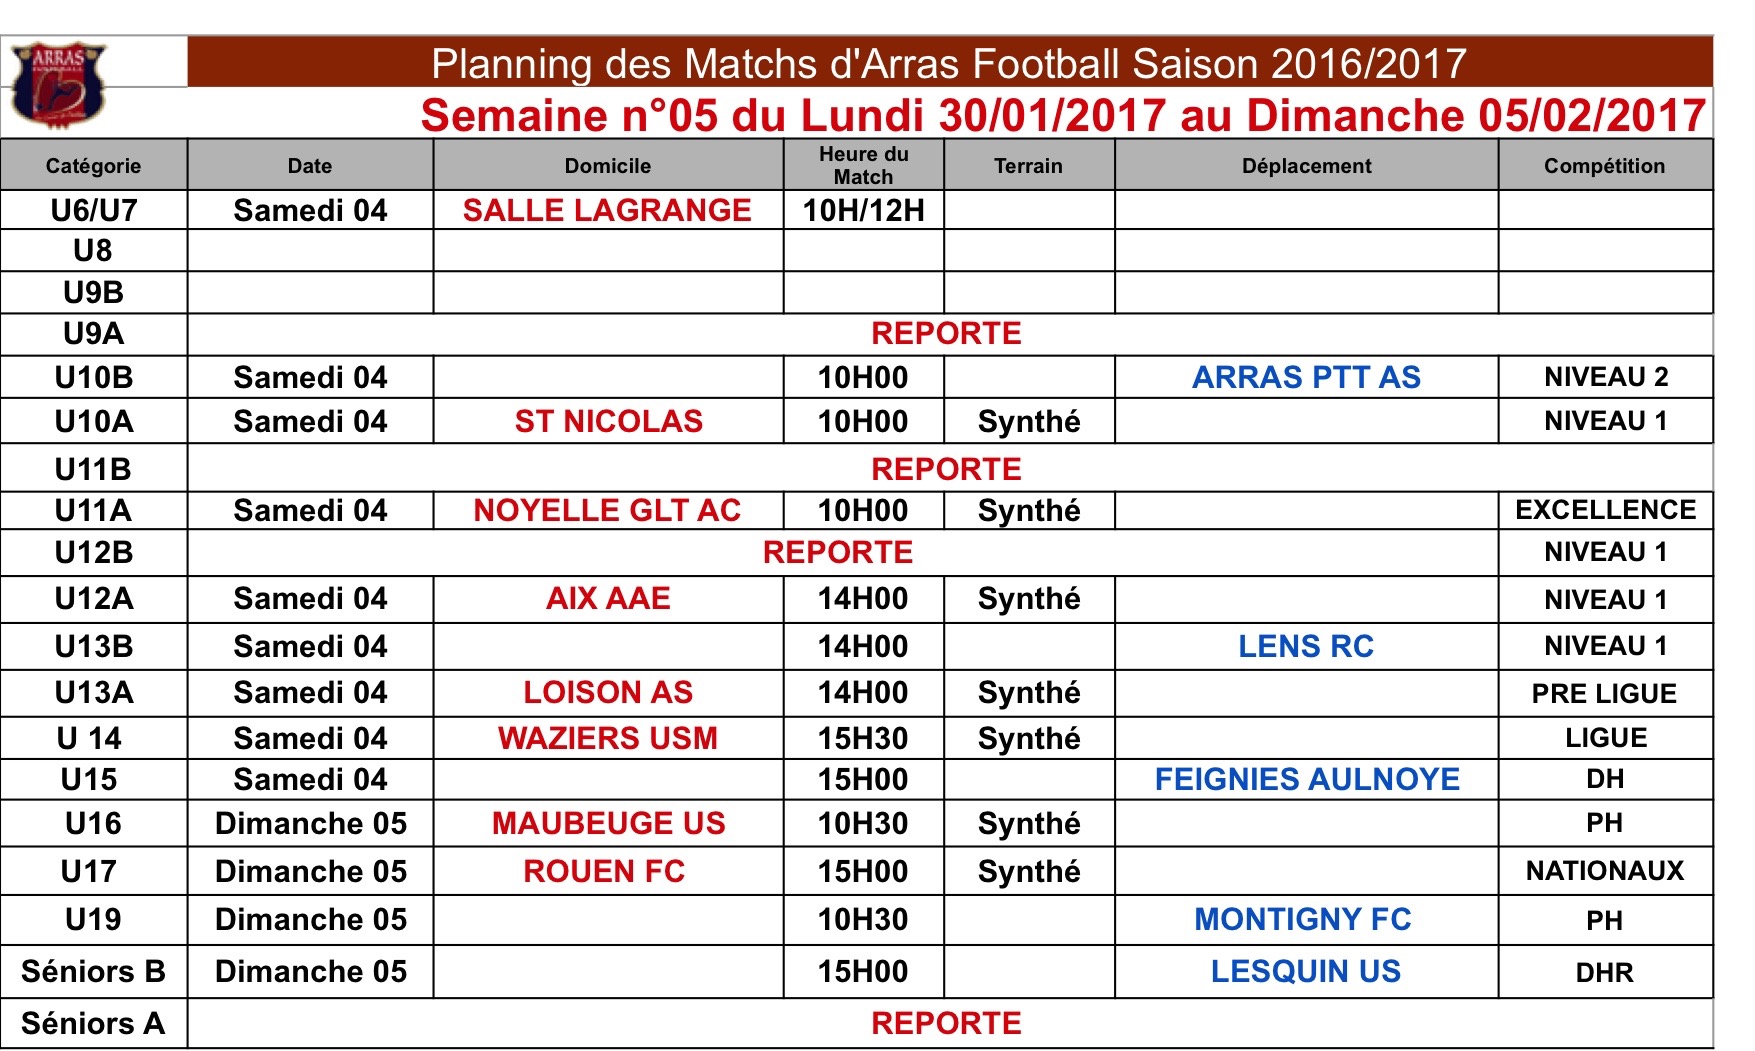 Planning des Matchs S05 2016 2017.jpg